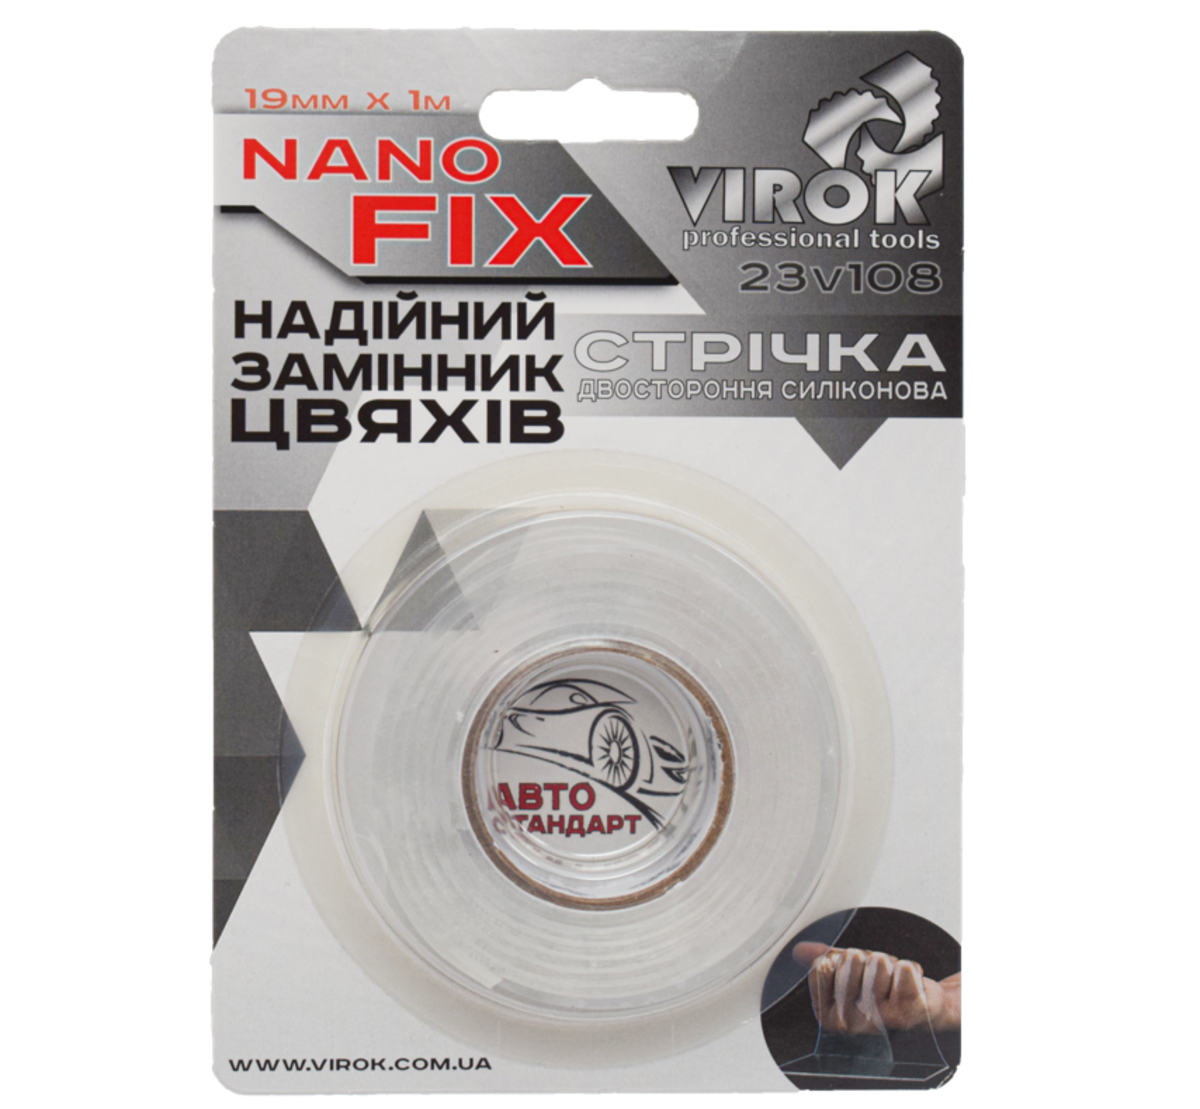 VIROK Стрічка 2-стороння силіконова Nano Fix: 19 мм х 1 м | 23V108